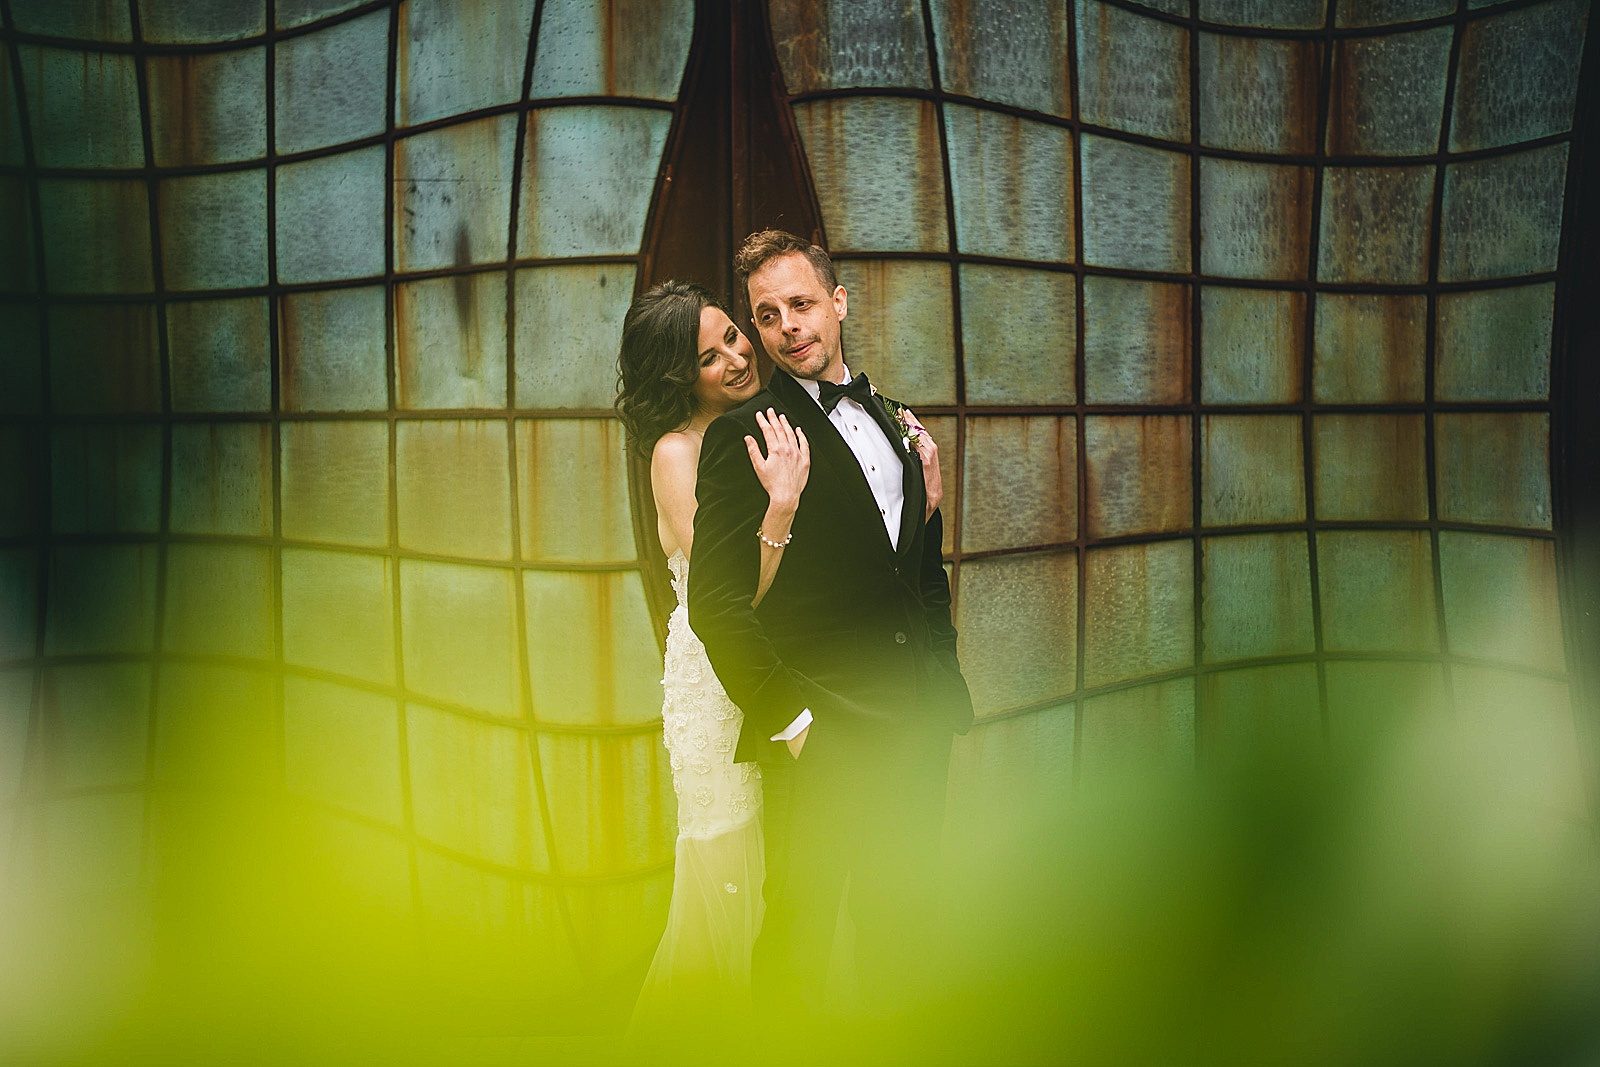 21 wedding photographer in chicago - Chicago Illuminating Company Wedding // Samantha + Jeremy